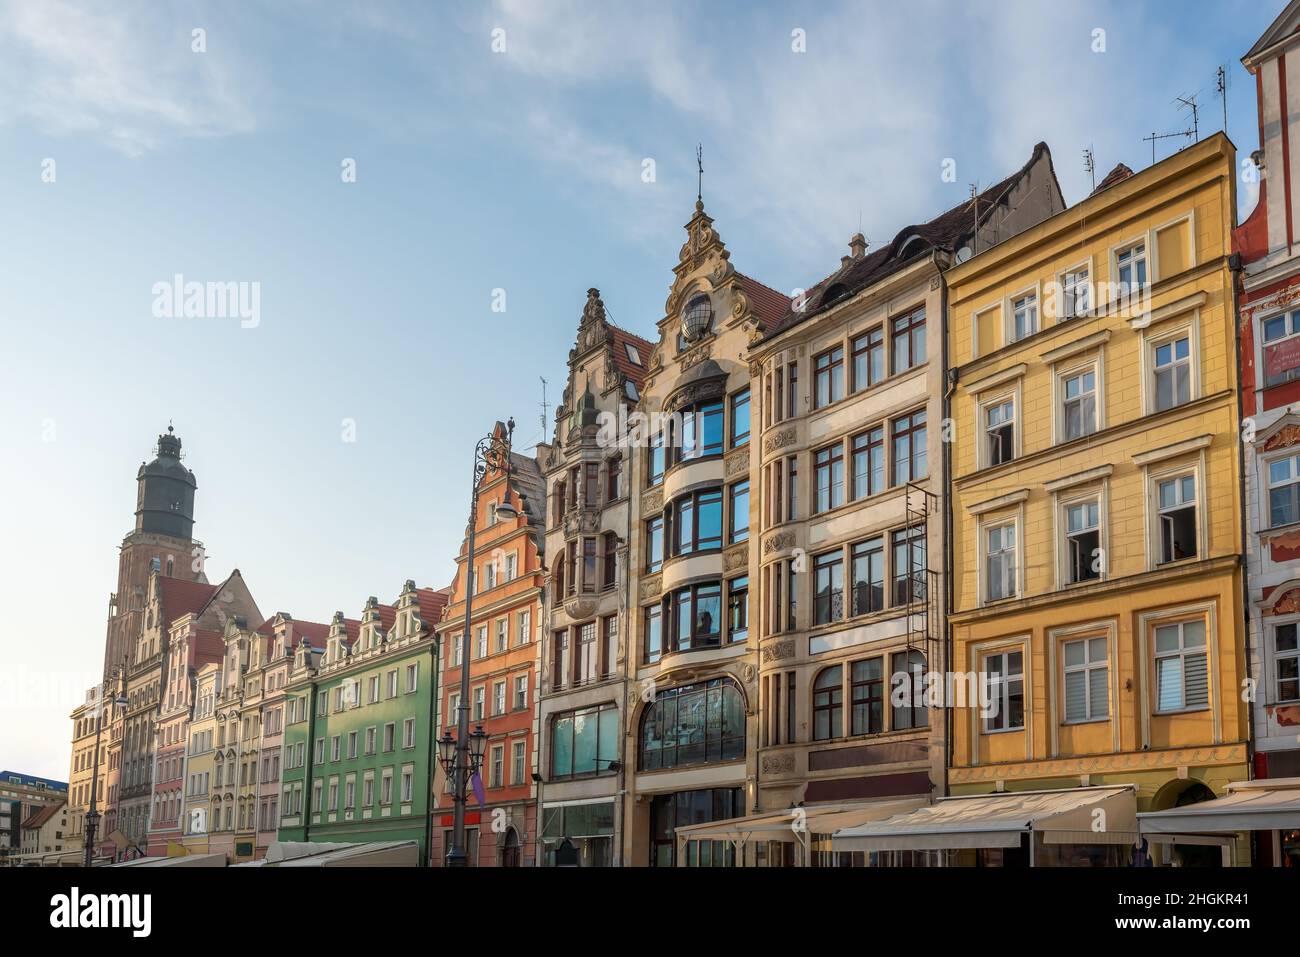 Place du marché, bâtiments colorés et tour de l'église St Elizabeth - Wroclaw, Pologne Banque D'Images